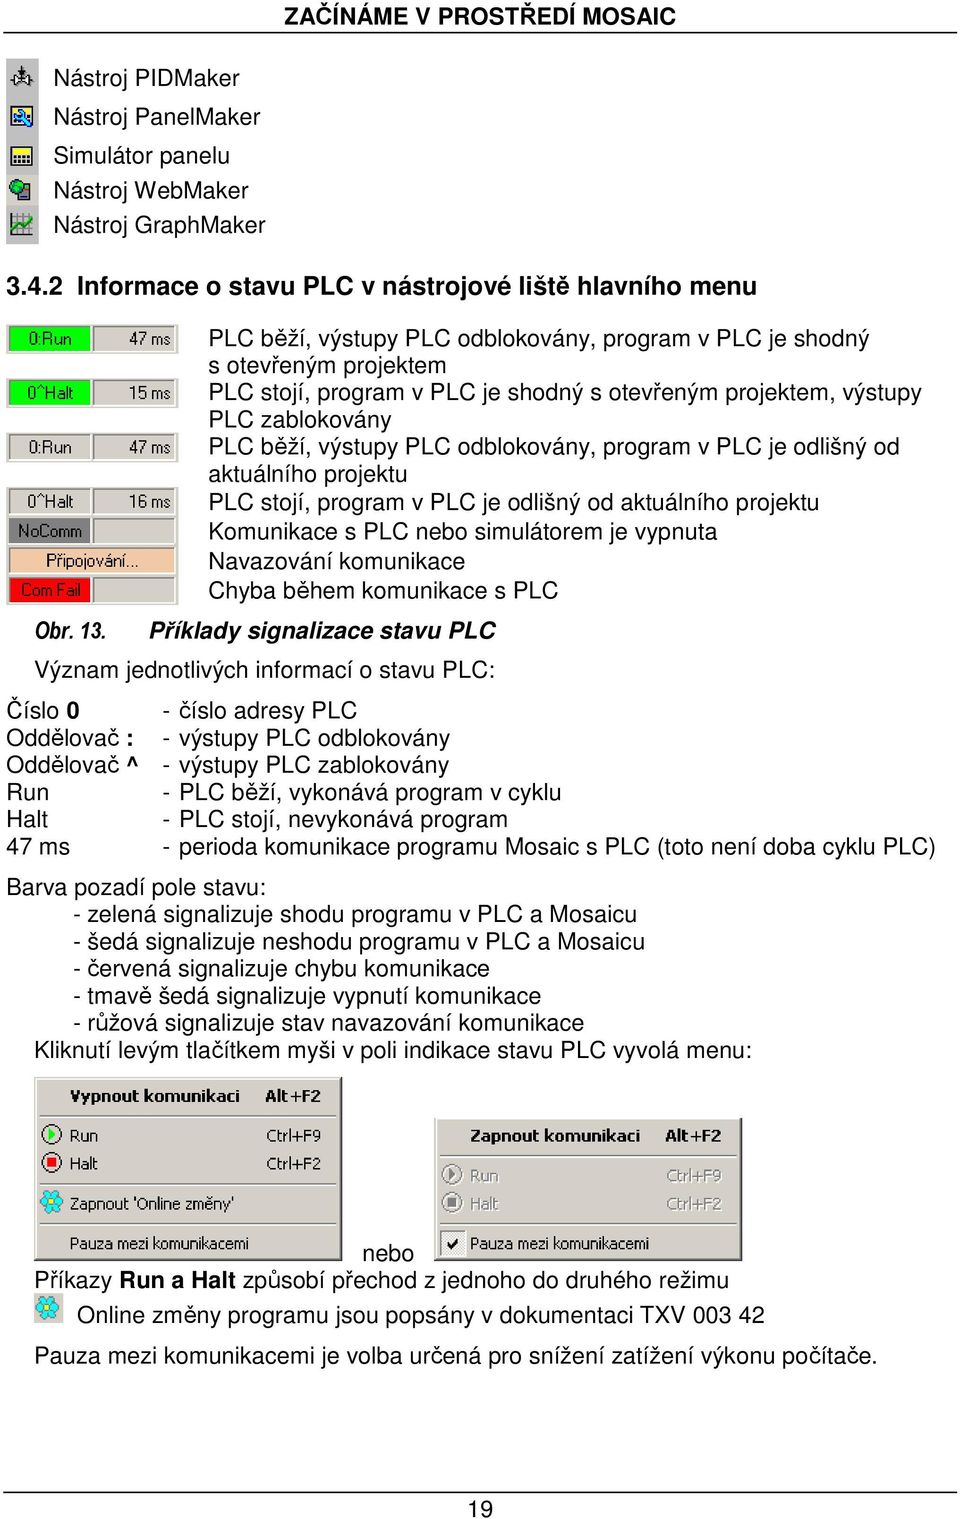 program v PLC je odlišný od aktuálního projektu PLC stojí, program v PLC je odlišný od aktuálního projektu Komunikace s PLC nebo simulátorem je vypnuta Navazování komunikace Chyba během komunikace s